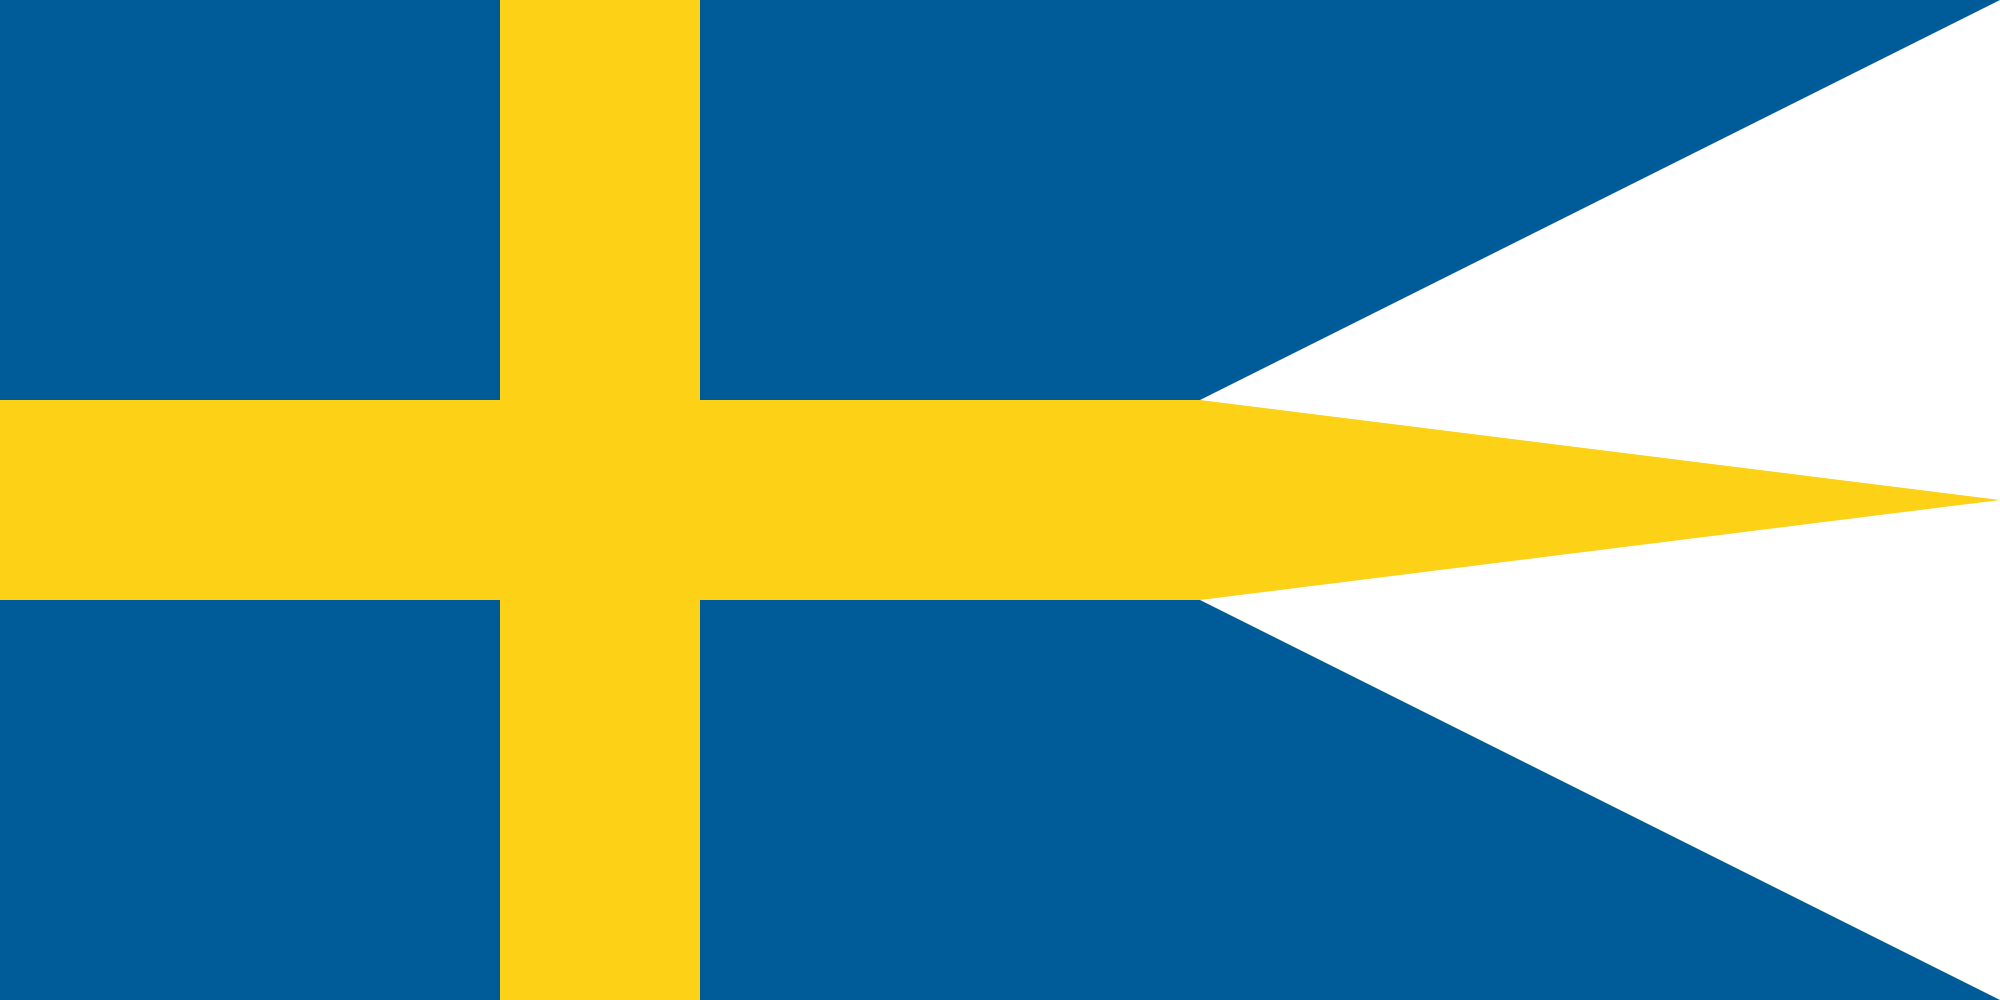 Sweden (Naval ensign)